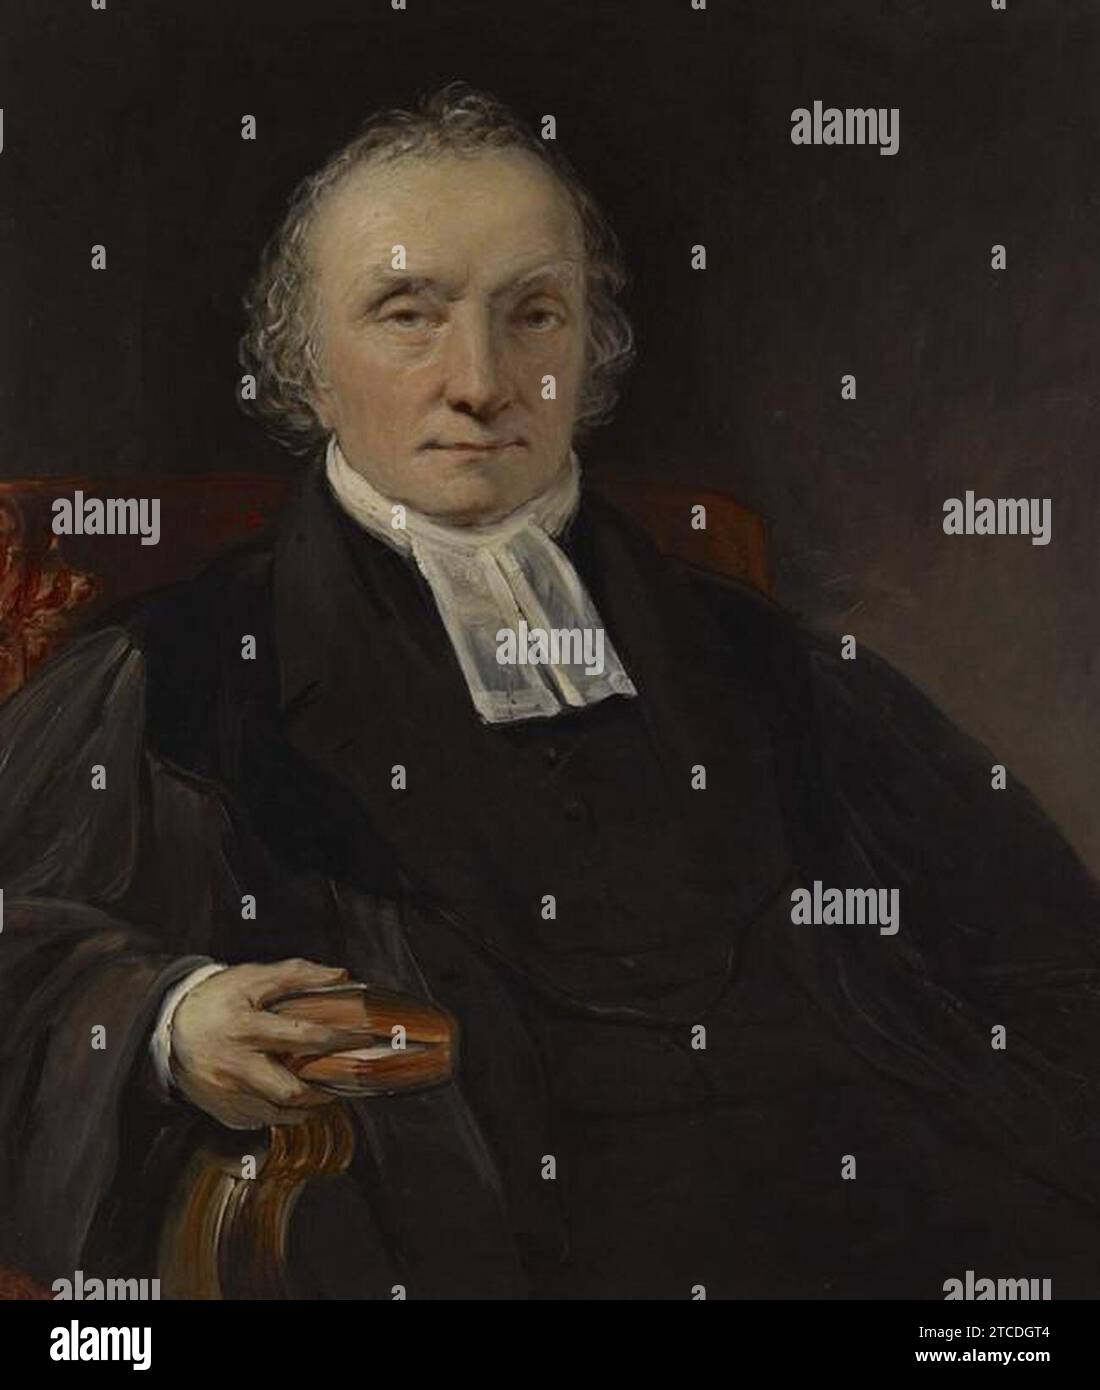 William Bonnar - Rév. Thomas Chalmers, 1780 - 1847. Prédicateur et réformateur social Banque D'Images